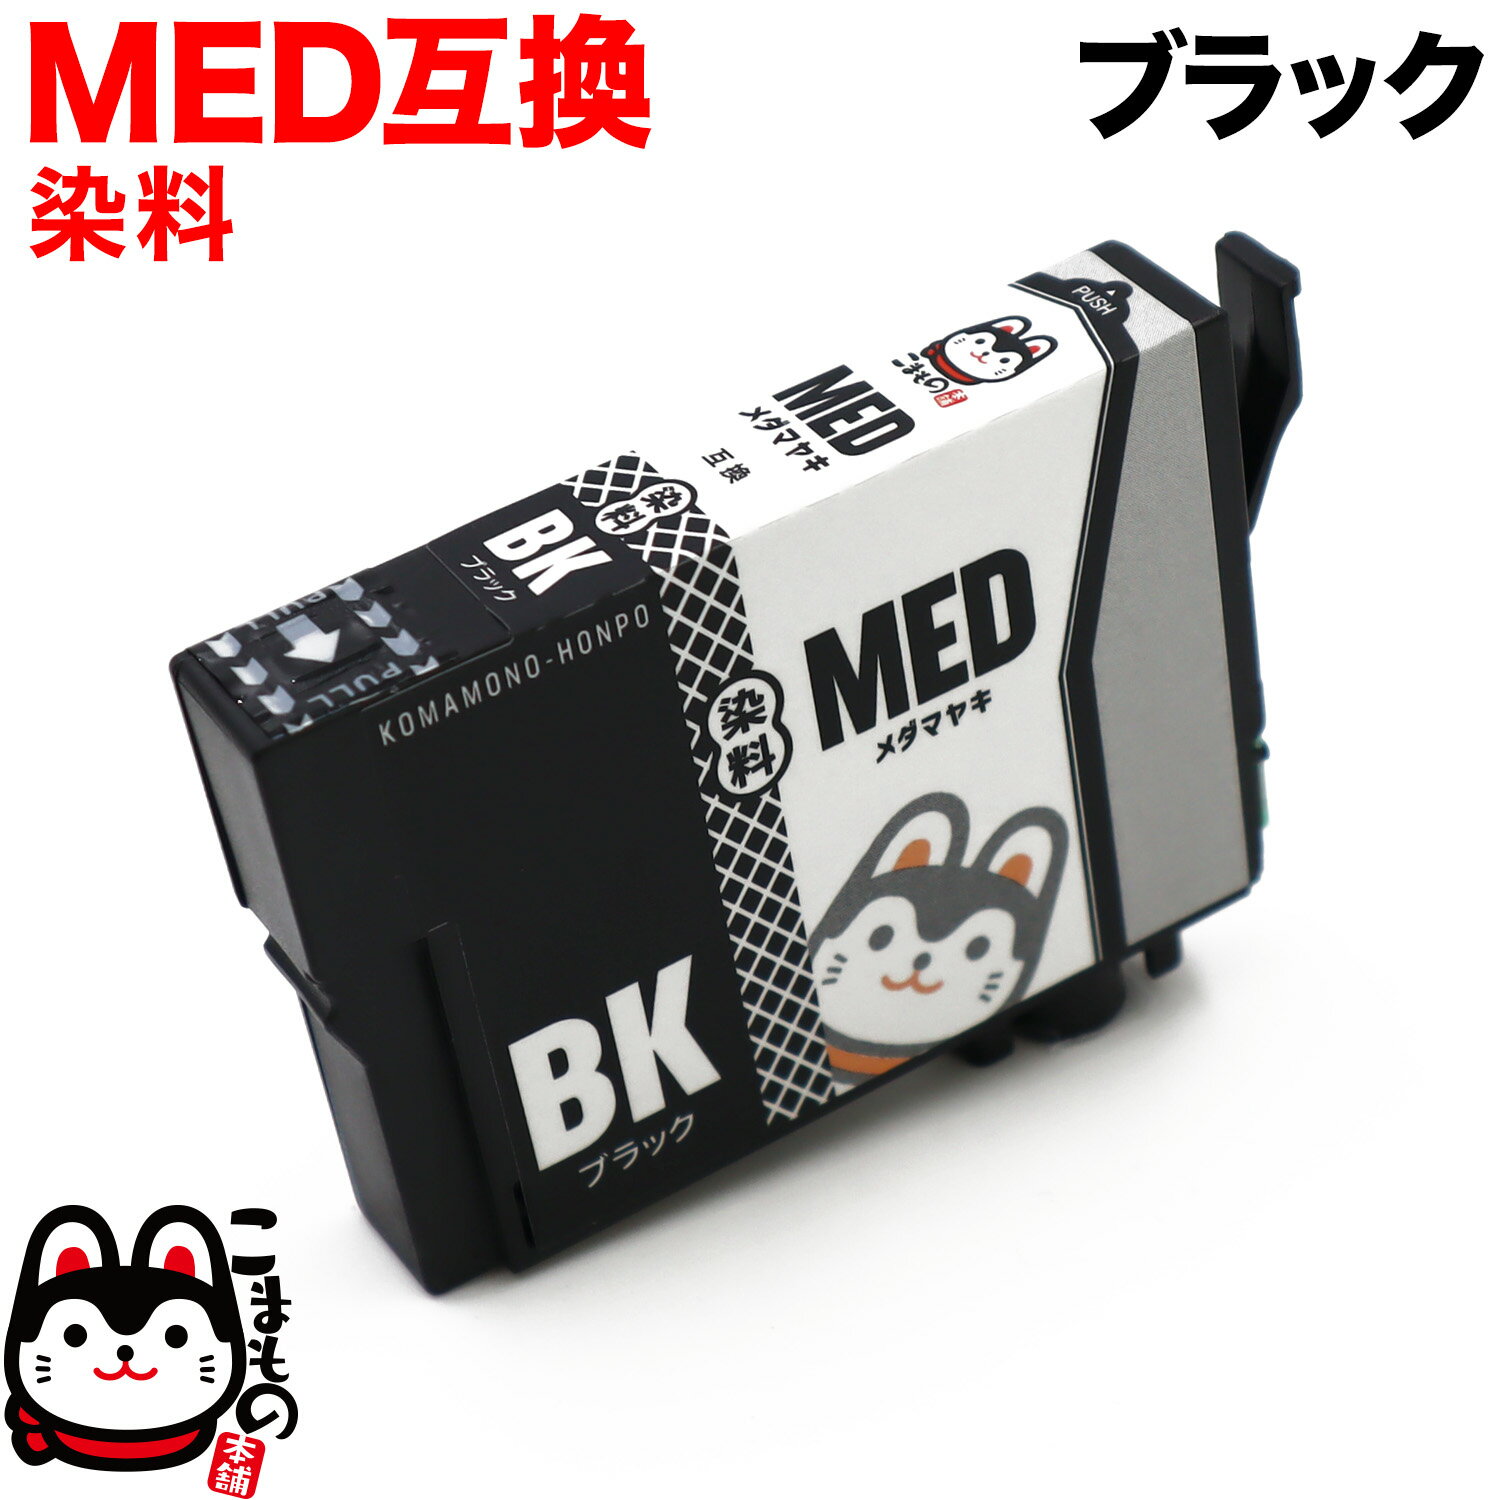 MED-BK エプソン用 MED メダマヤキ 互換インクカートリッジ 染料 ブラック 染料ブラック EW-056A EW-456A